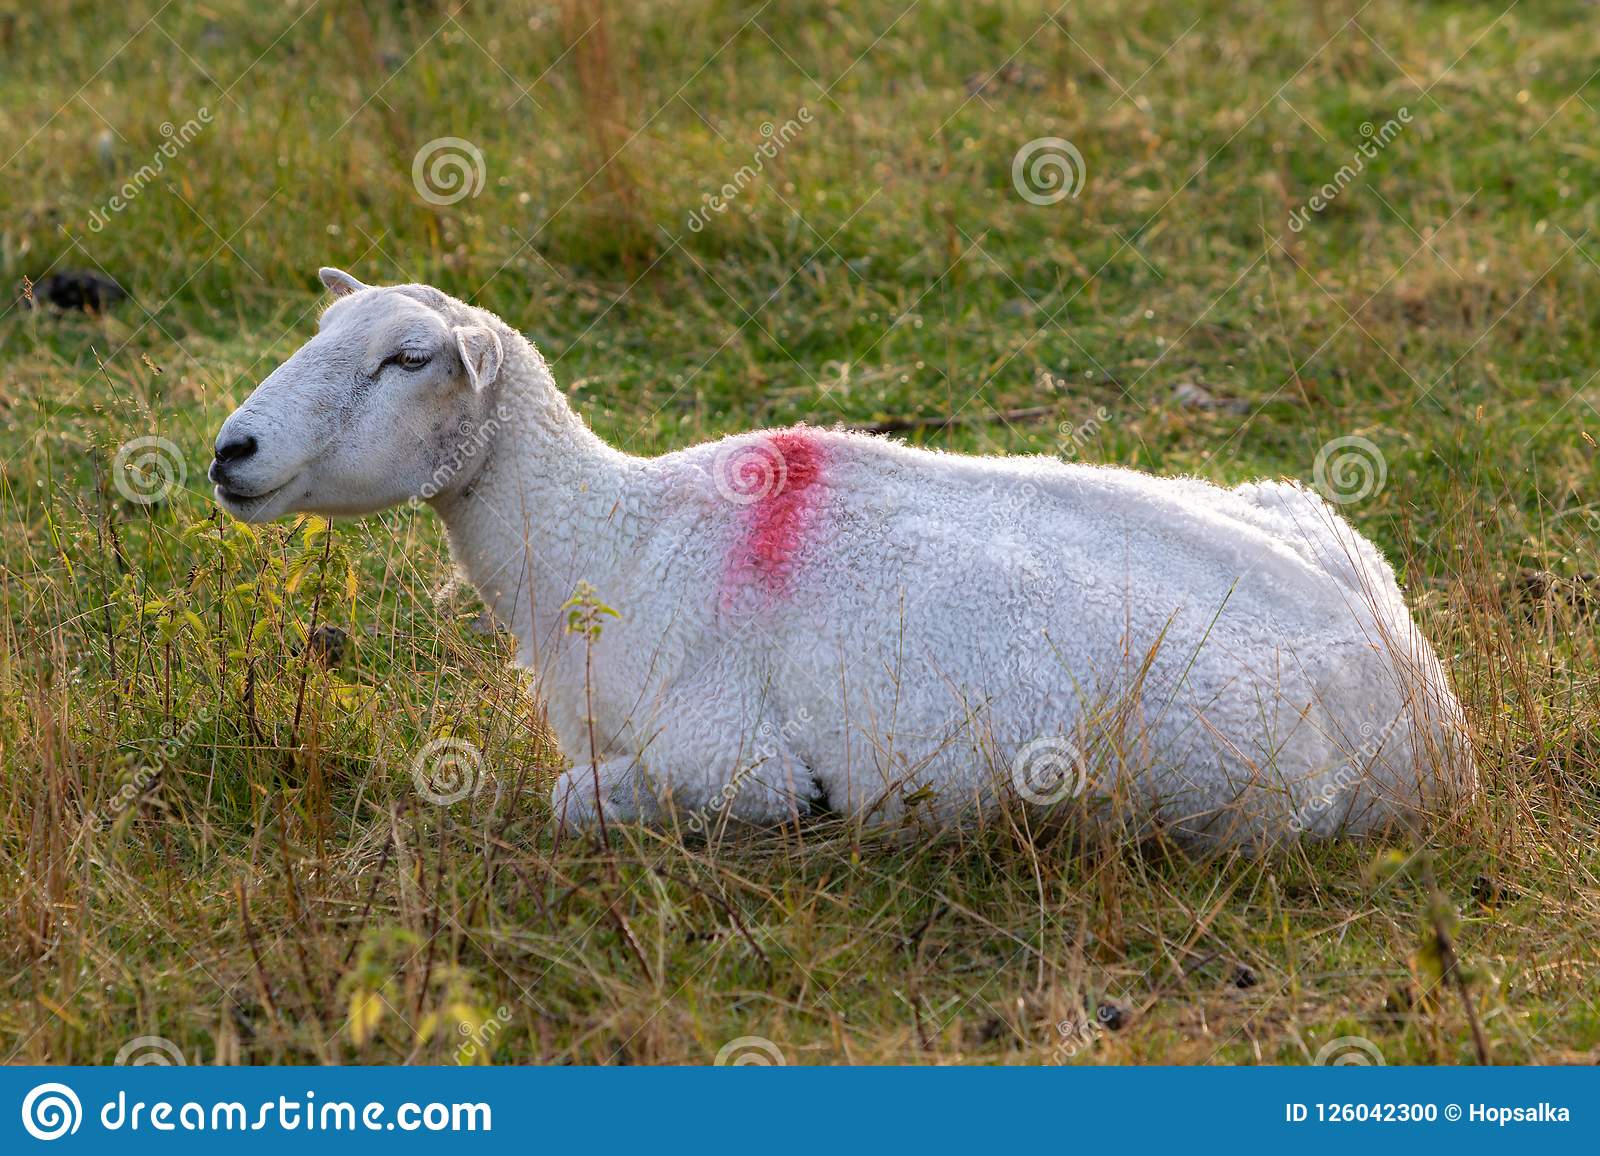 one-sheep-resting-grassy-farmland-one-sheep-resting-grassy-meadow-farming-conceptn-126042300.jpg